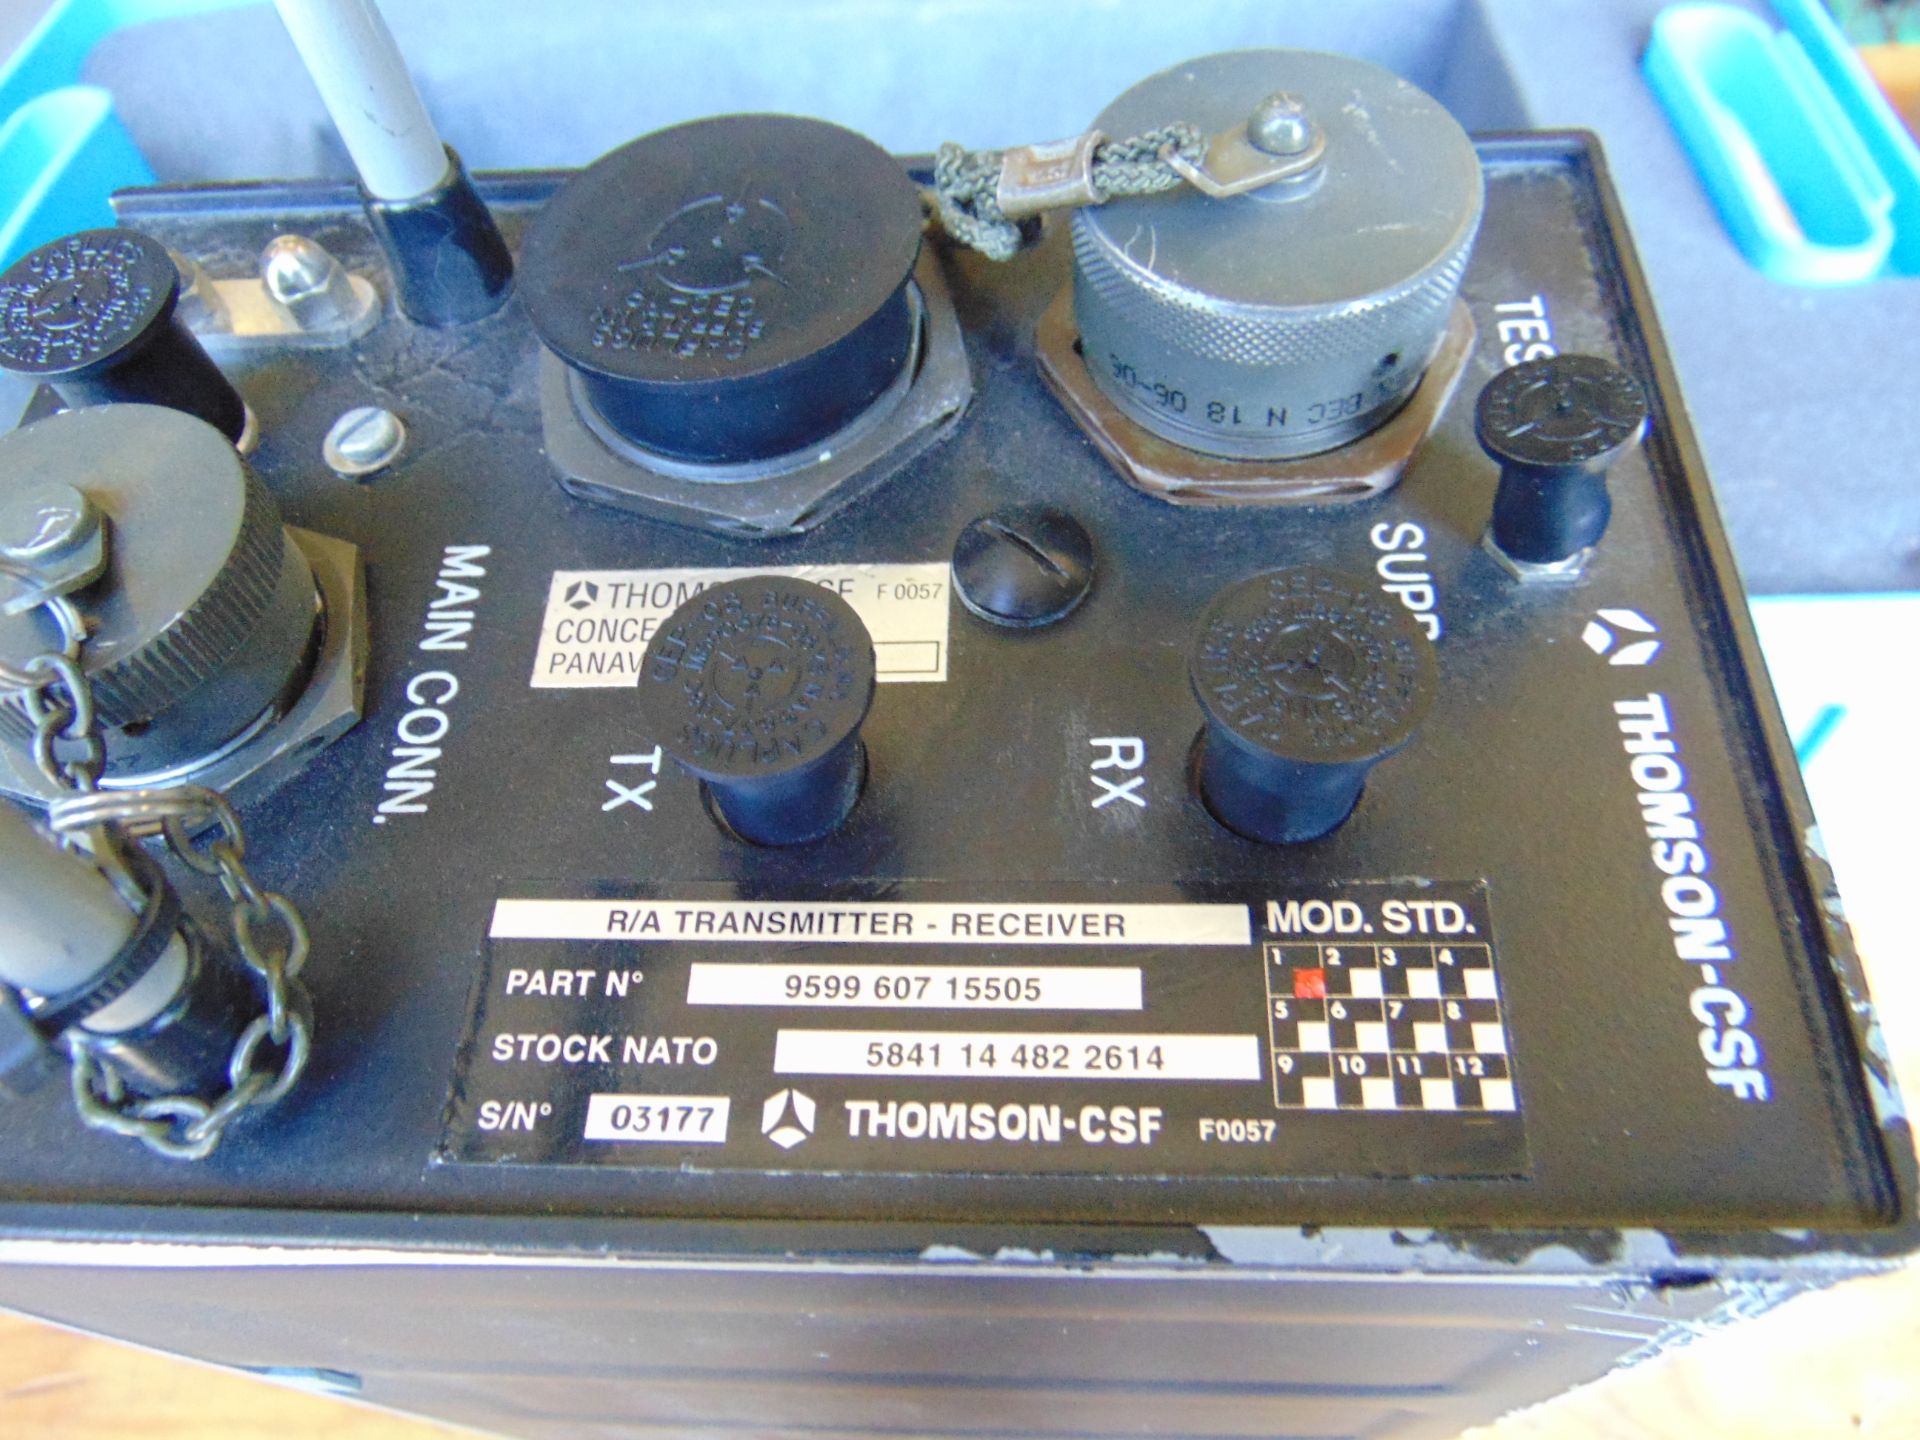 Thompson Radio Altimeter Transmitter Receiver in Transit Case